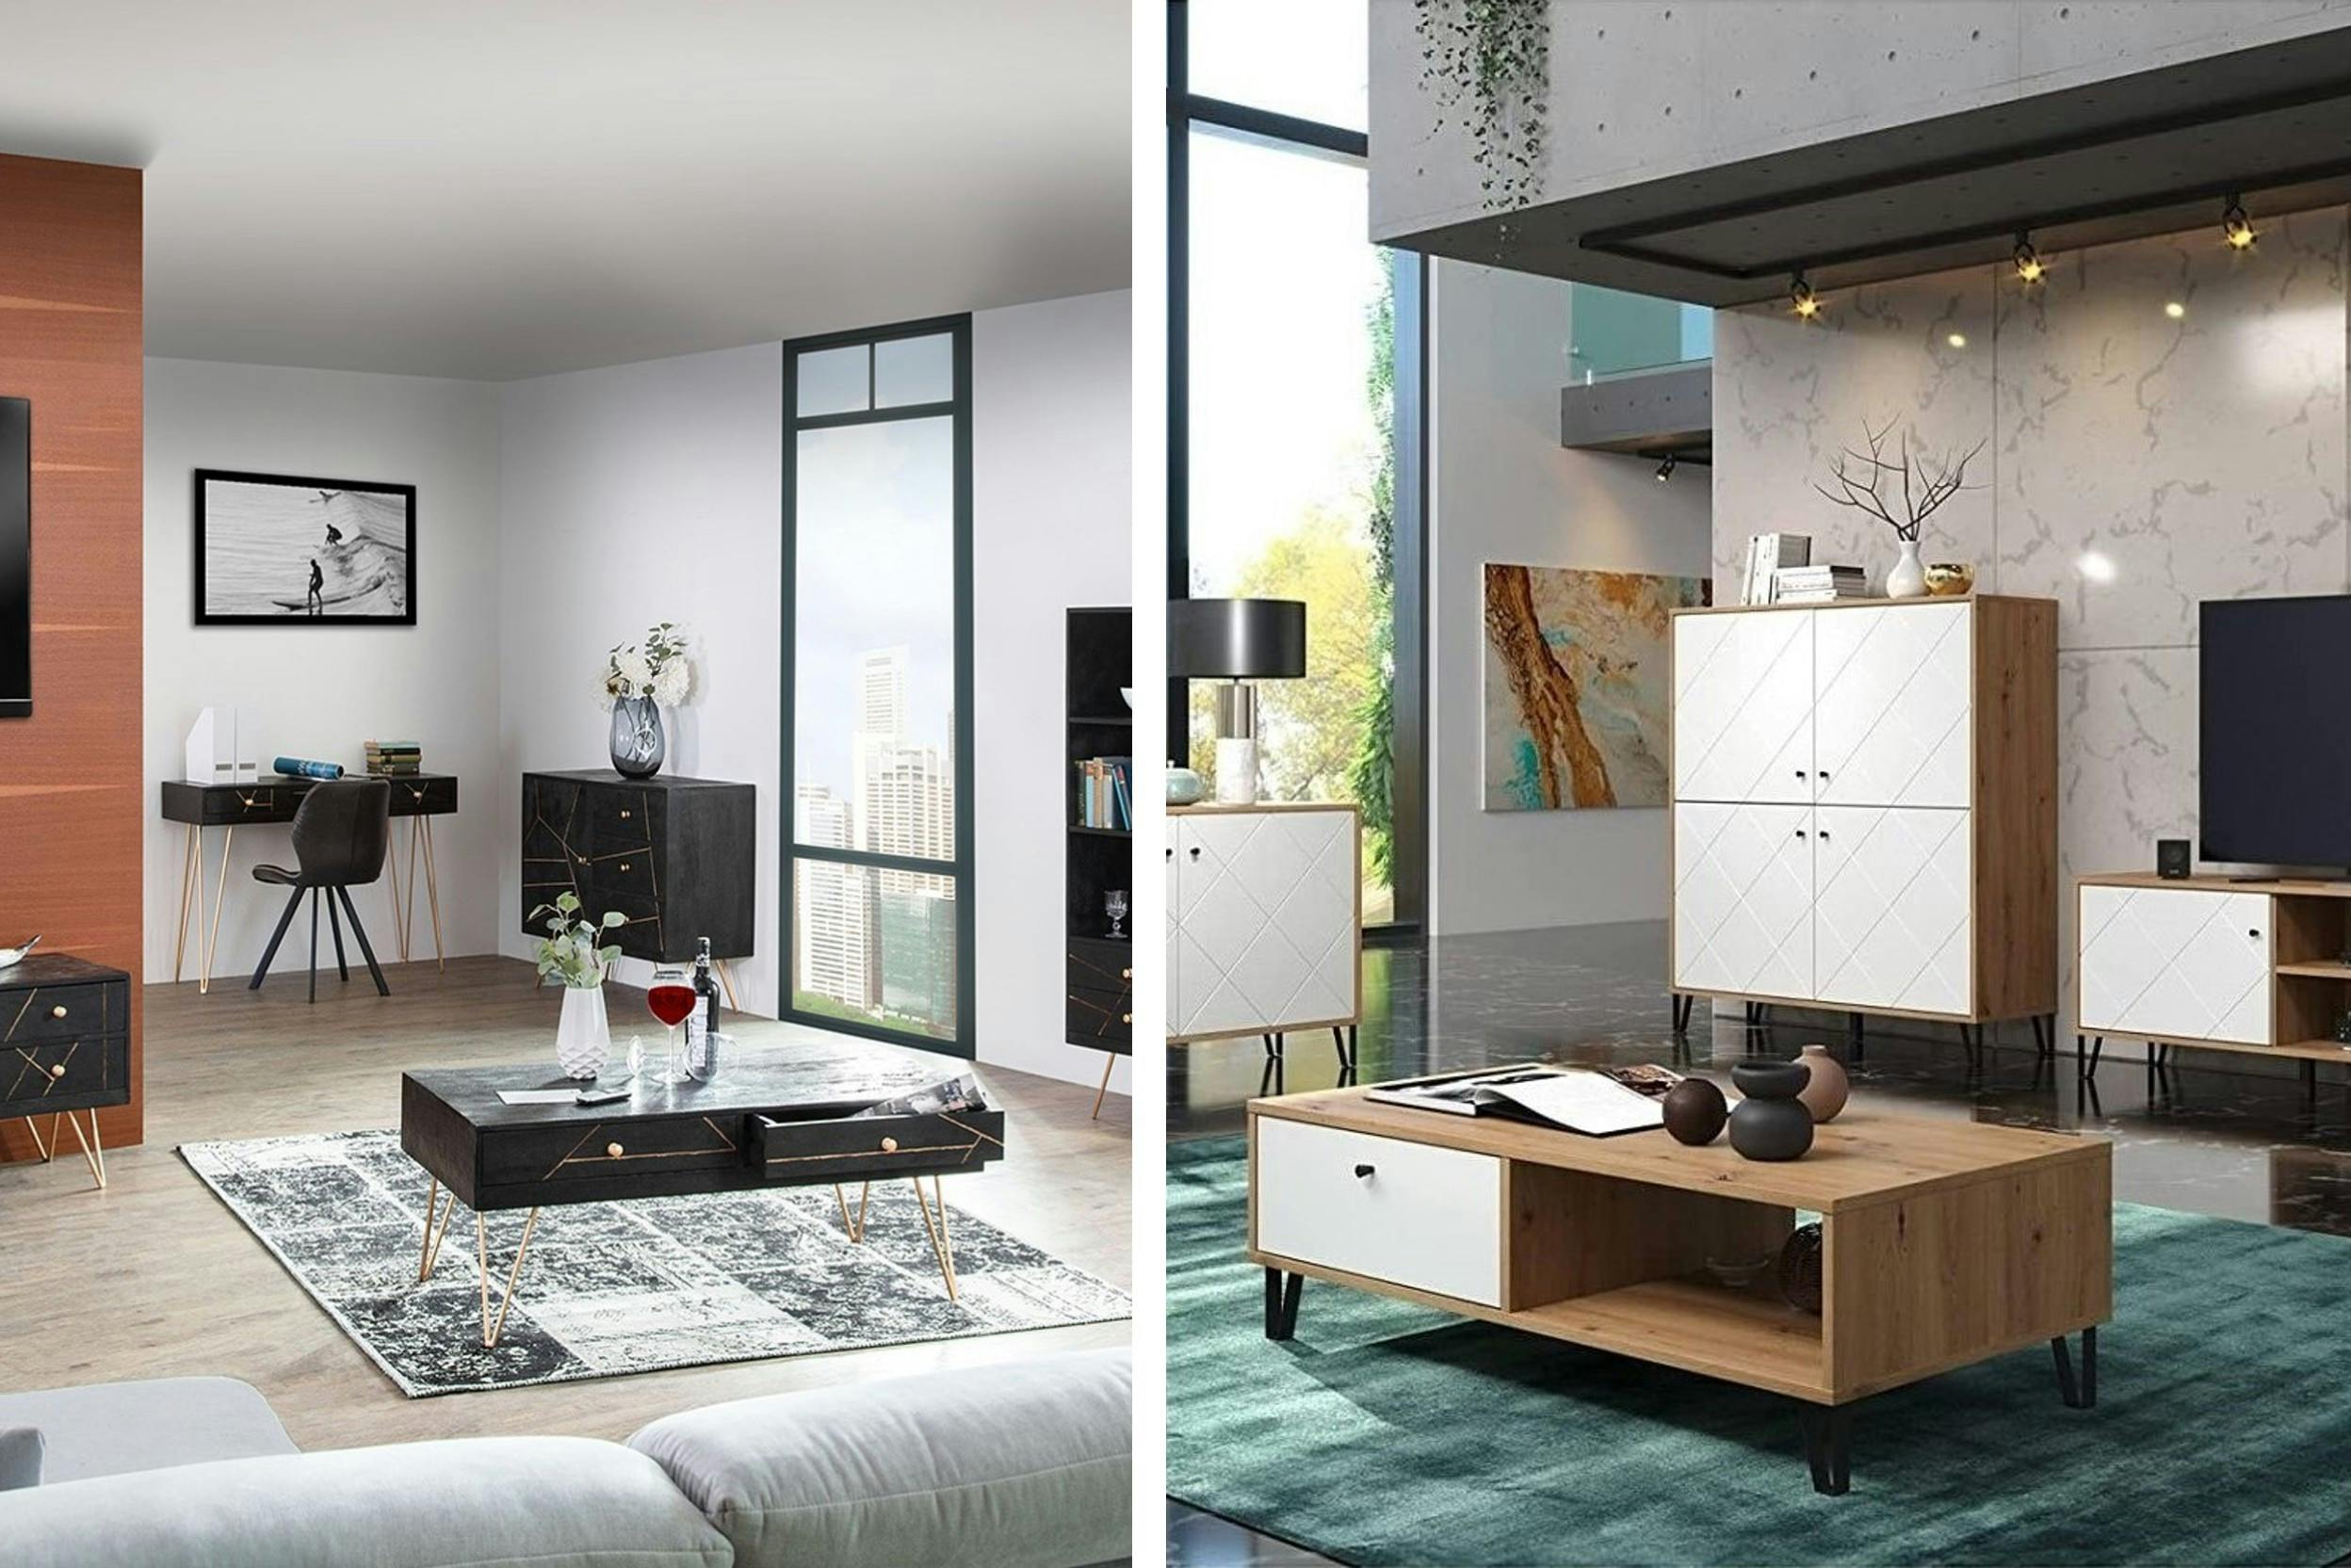 Due soggiorni con mobili con gambe a forcina: dorate in stile glamour (sinistra), nere in stile moderno-scandinavo (destra)